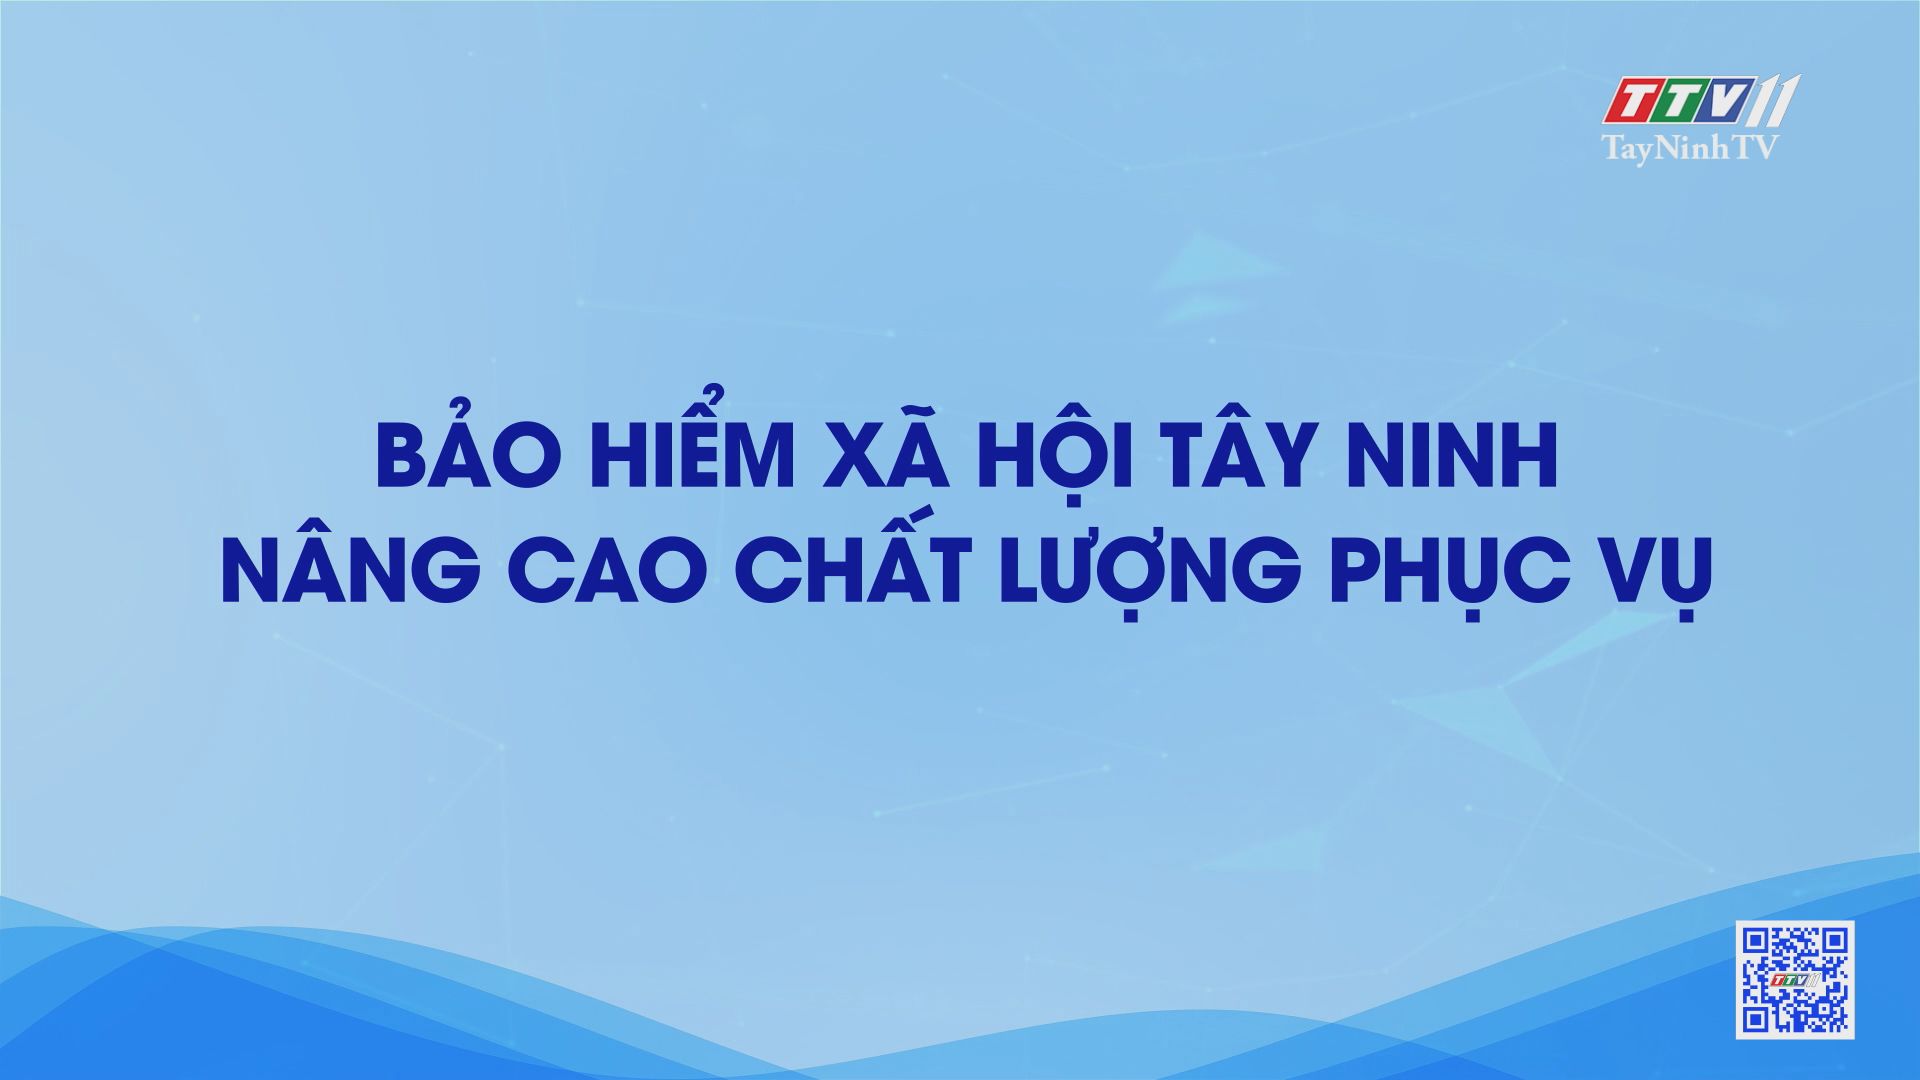 Bảo hiểm xã hội Tây Ninh nâng cao chất lượng phục vụ | TayNinhTV